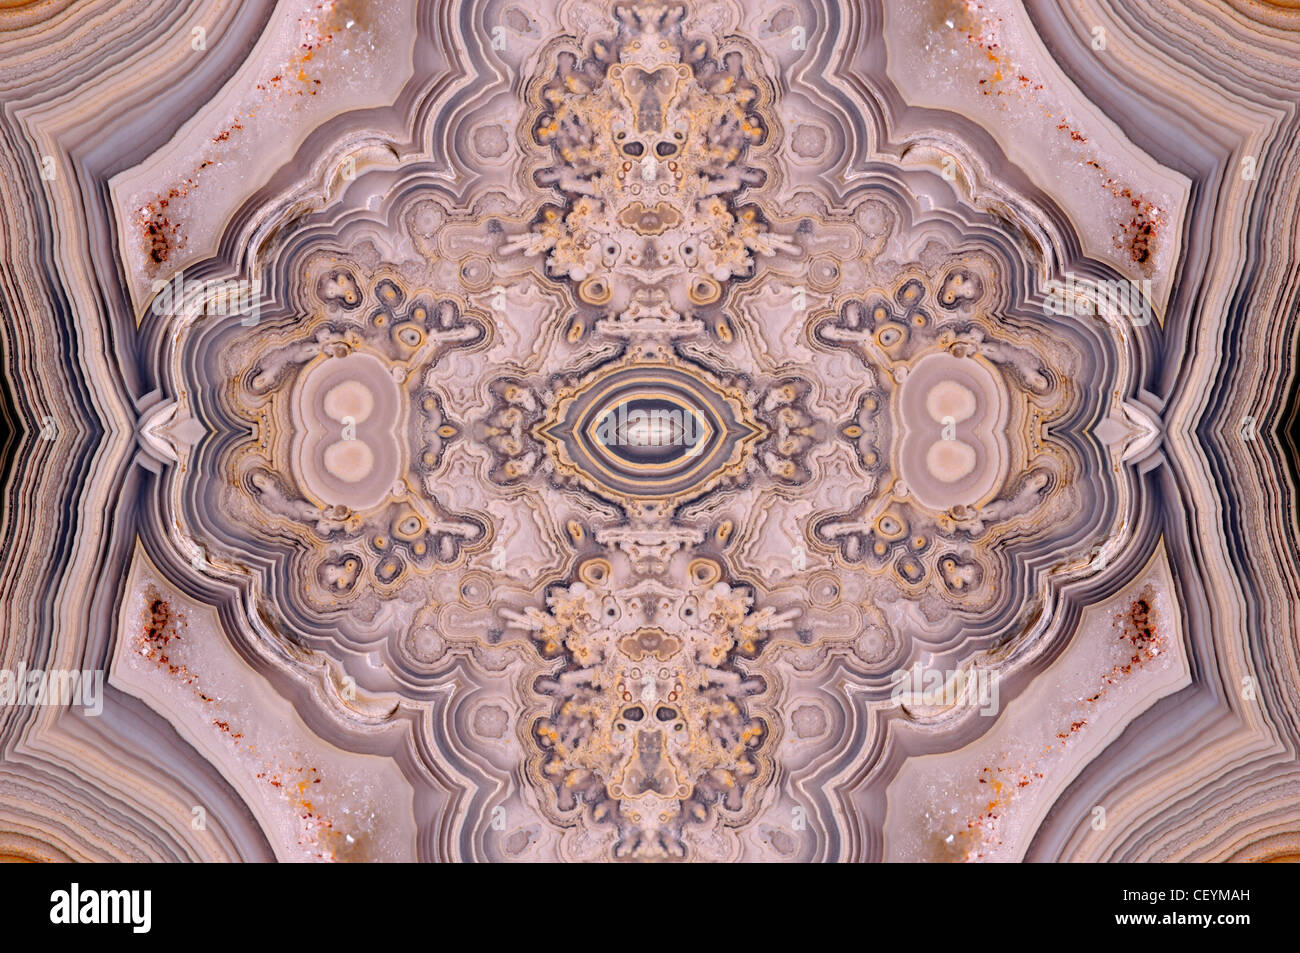 Tranche polie de Jasper (opaque, forme à grain fin de calcédoine) motif symétrique faite à partir de quatre exemplaires de la même image Banque D'Images